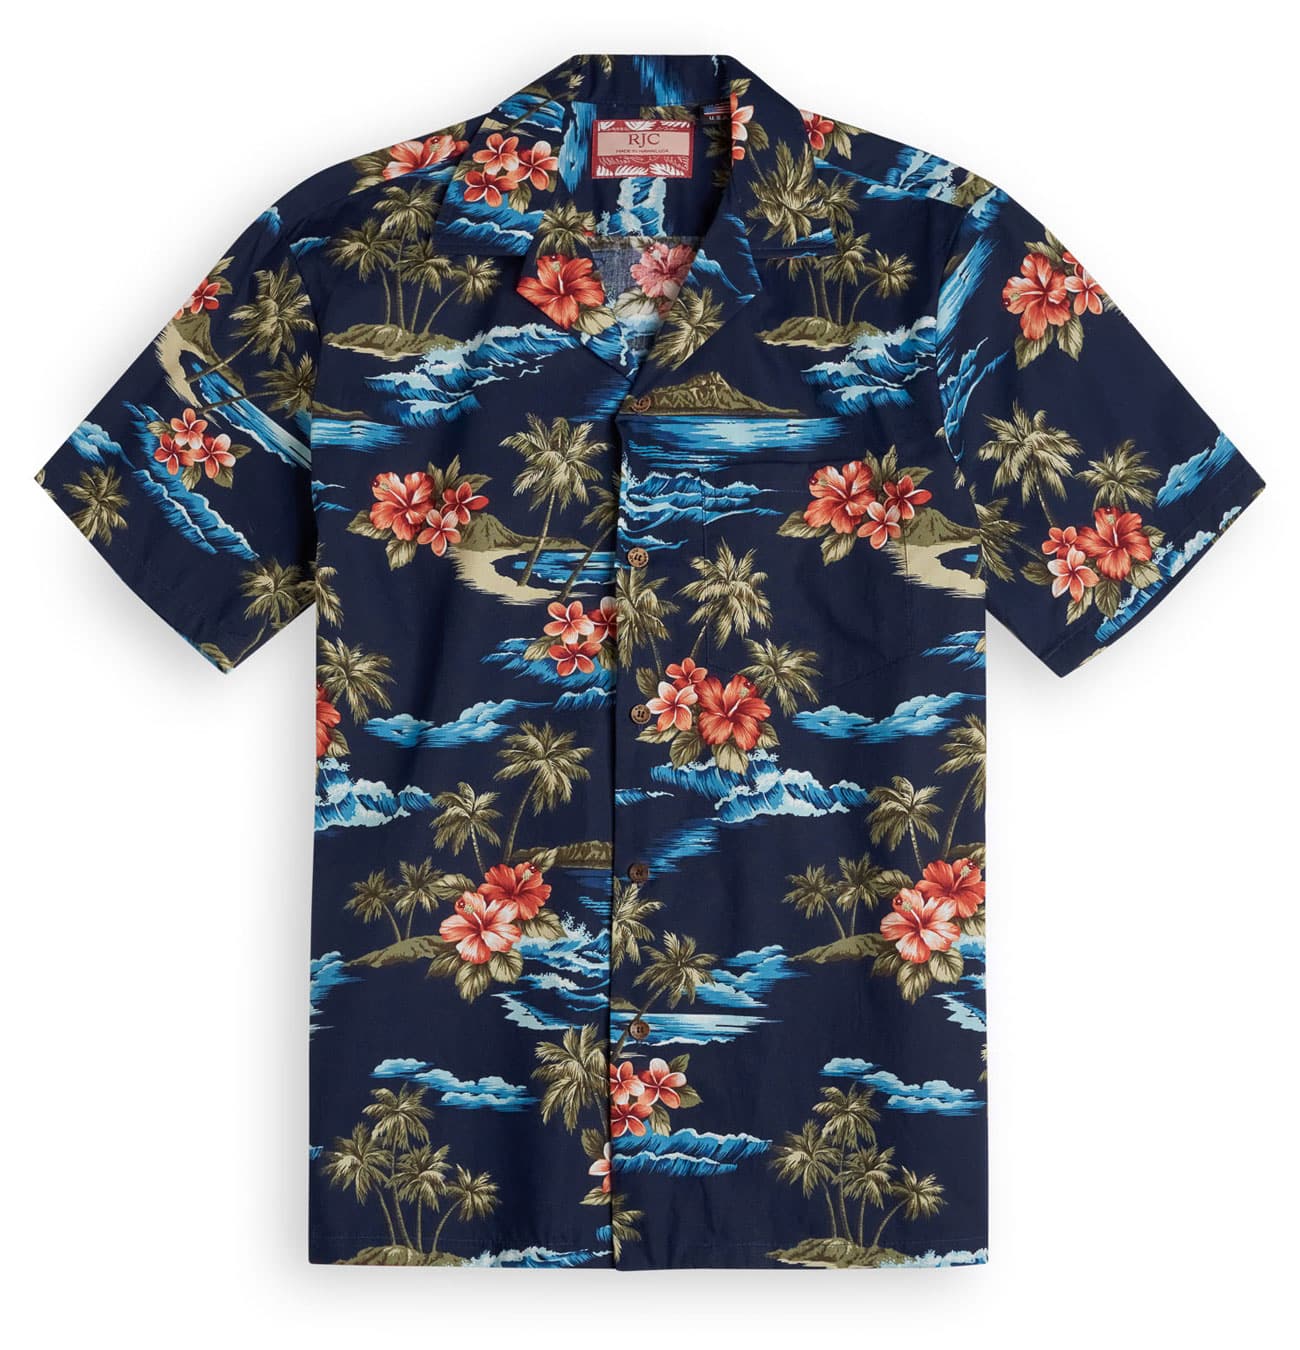 Nalu Bay - Hawaiian Shirt Shop UK